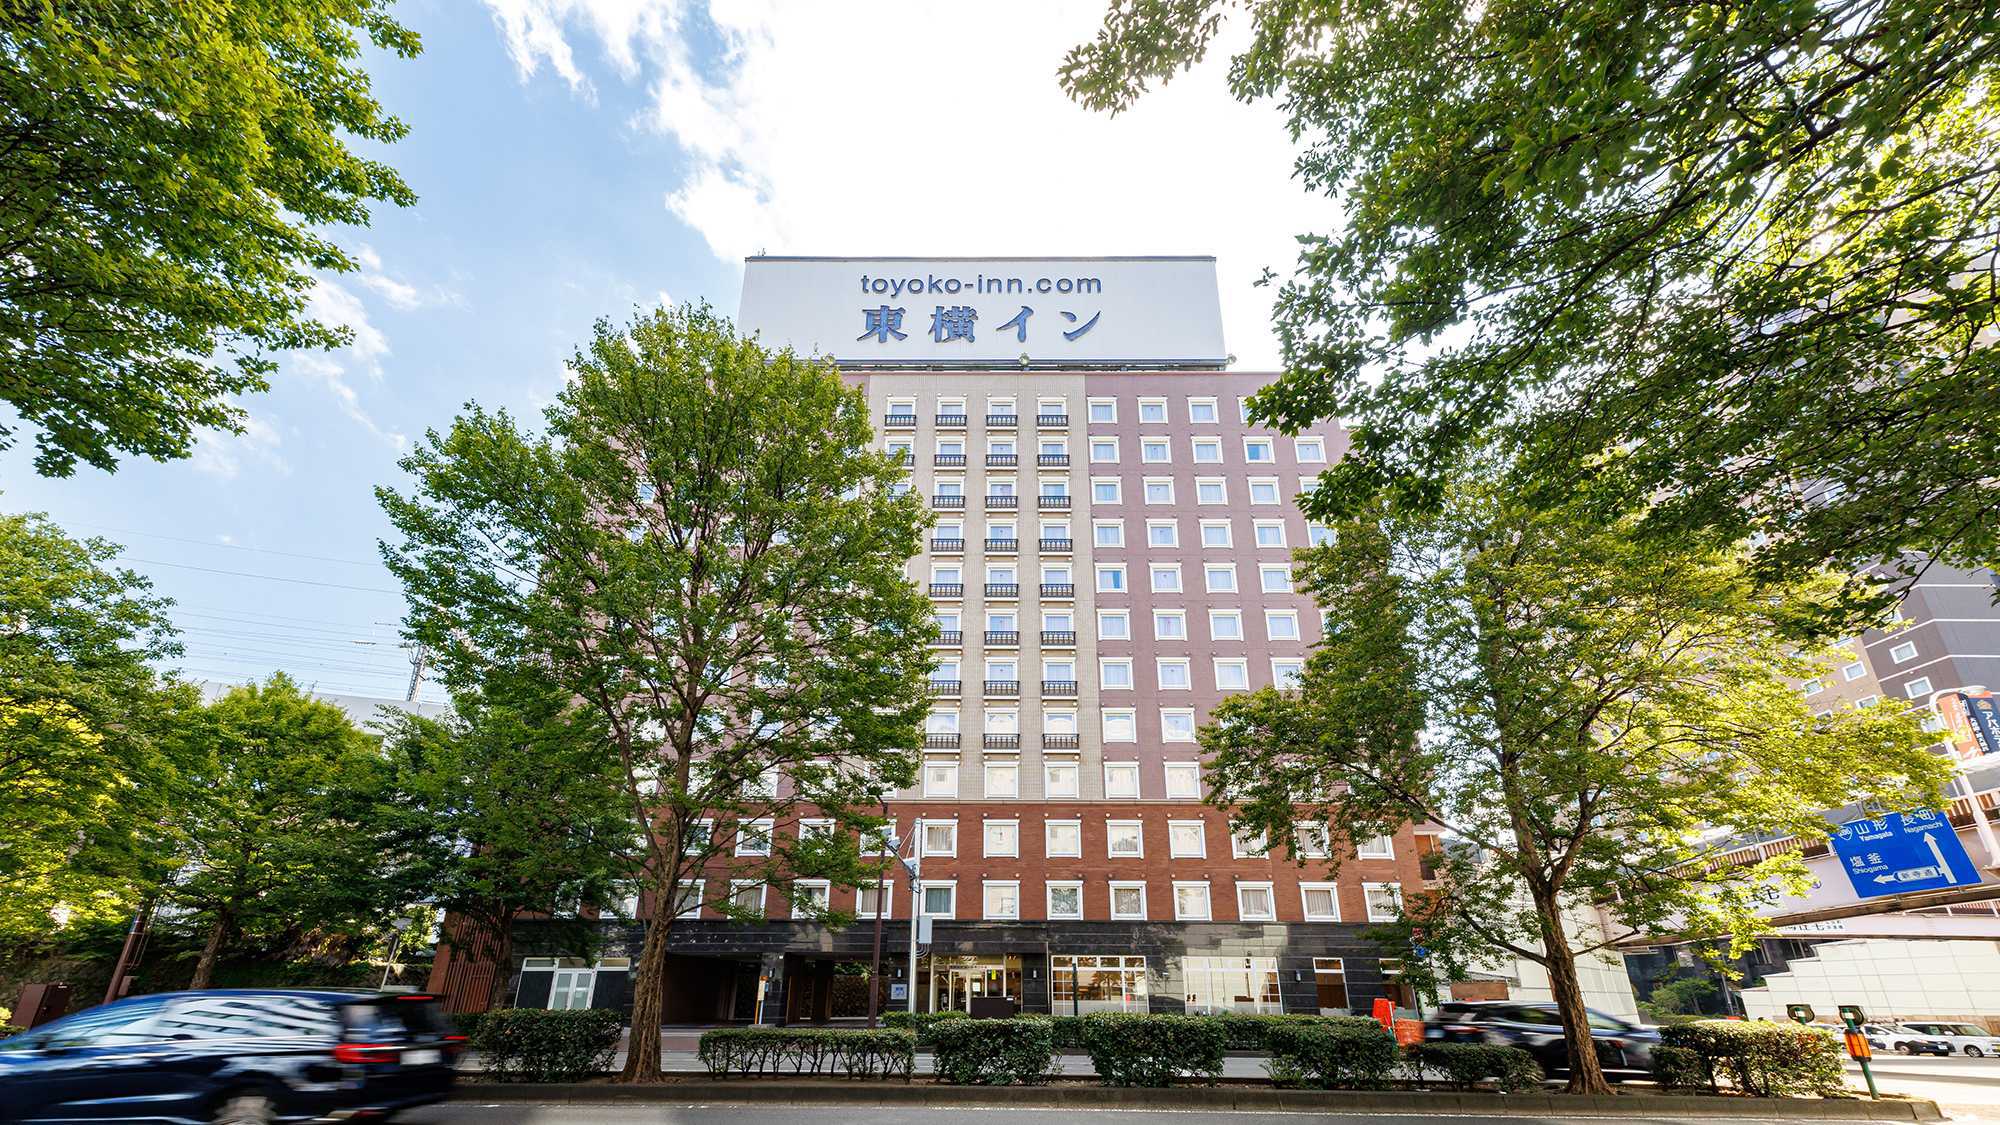 仙台駅周辺でおすすめの格安ビジネスホテルを教えてください。